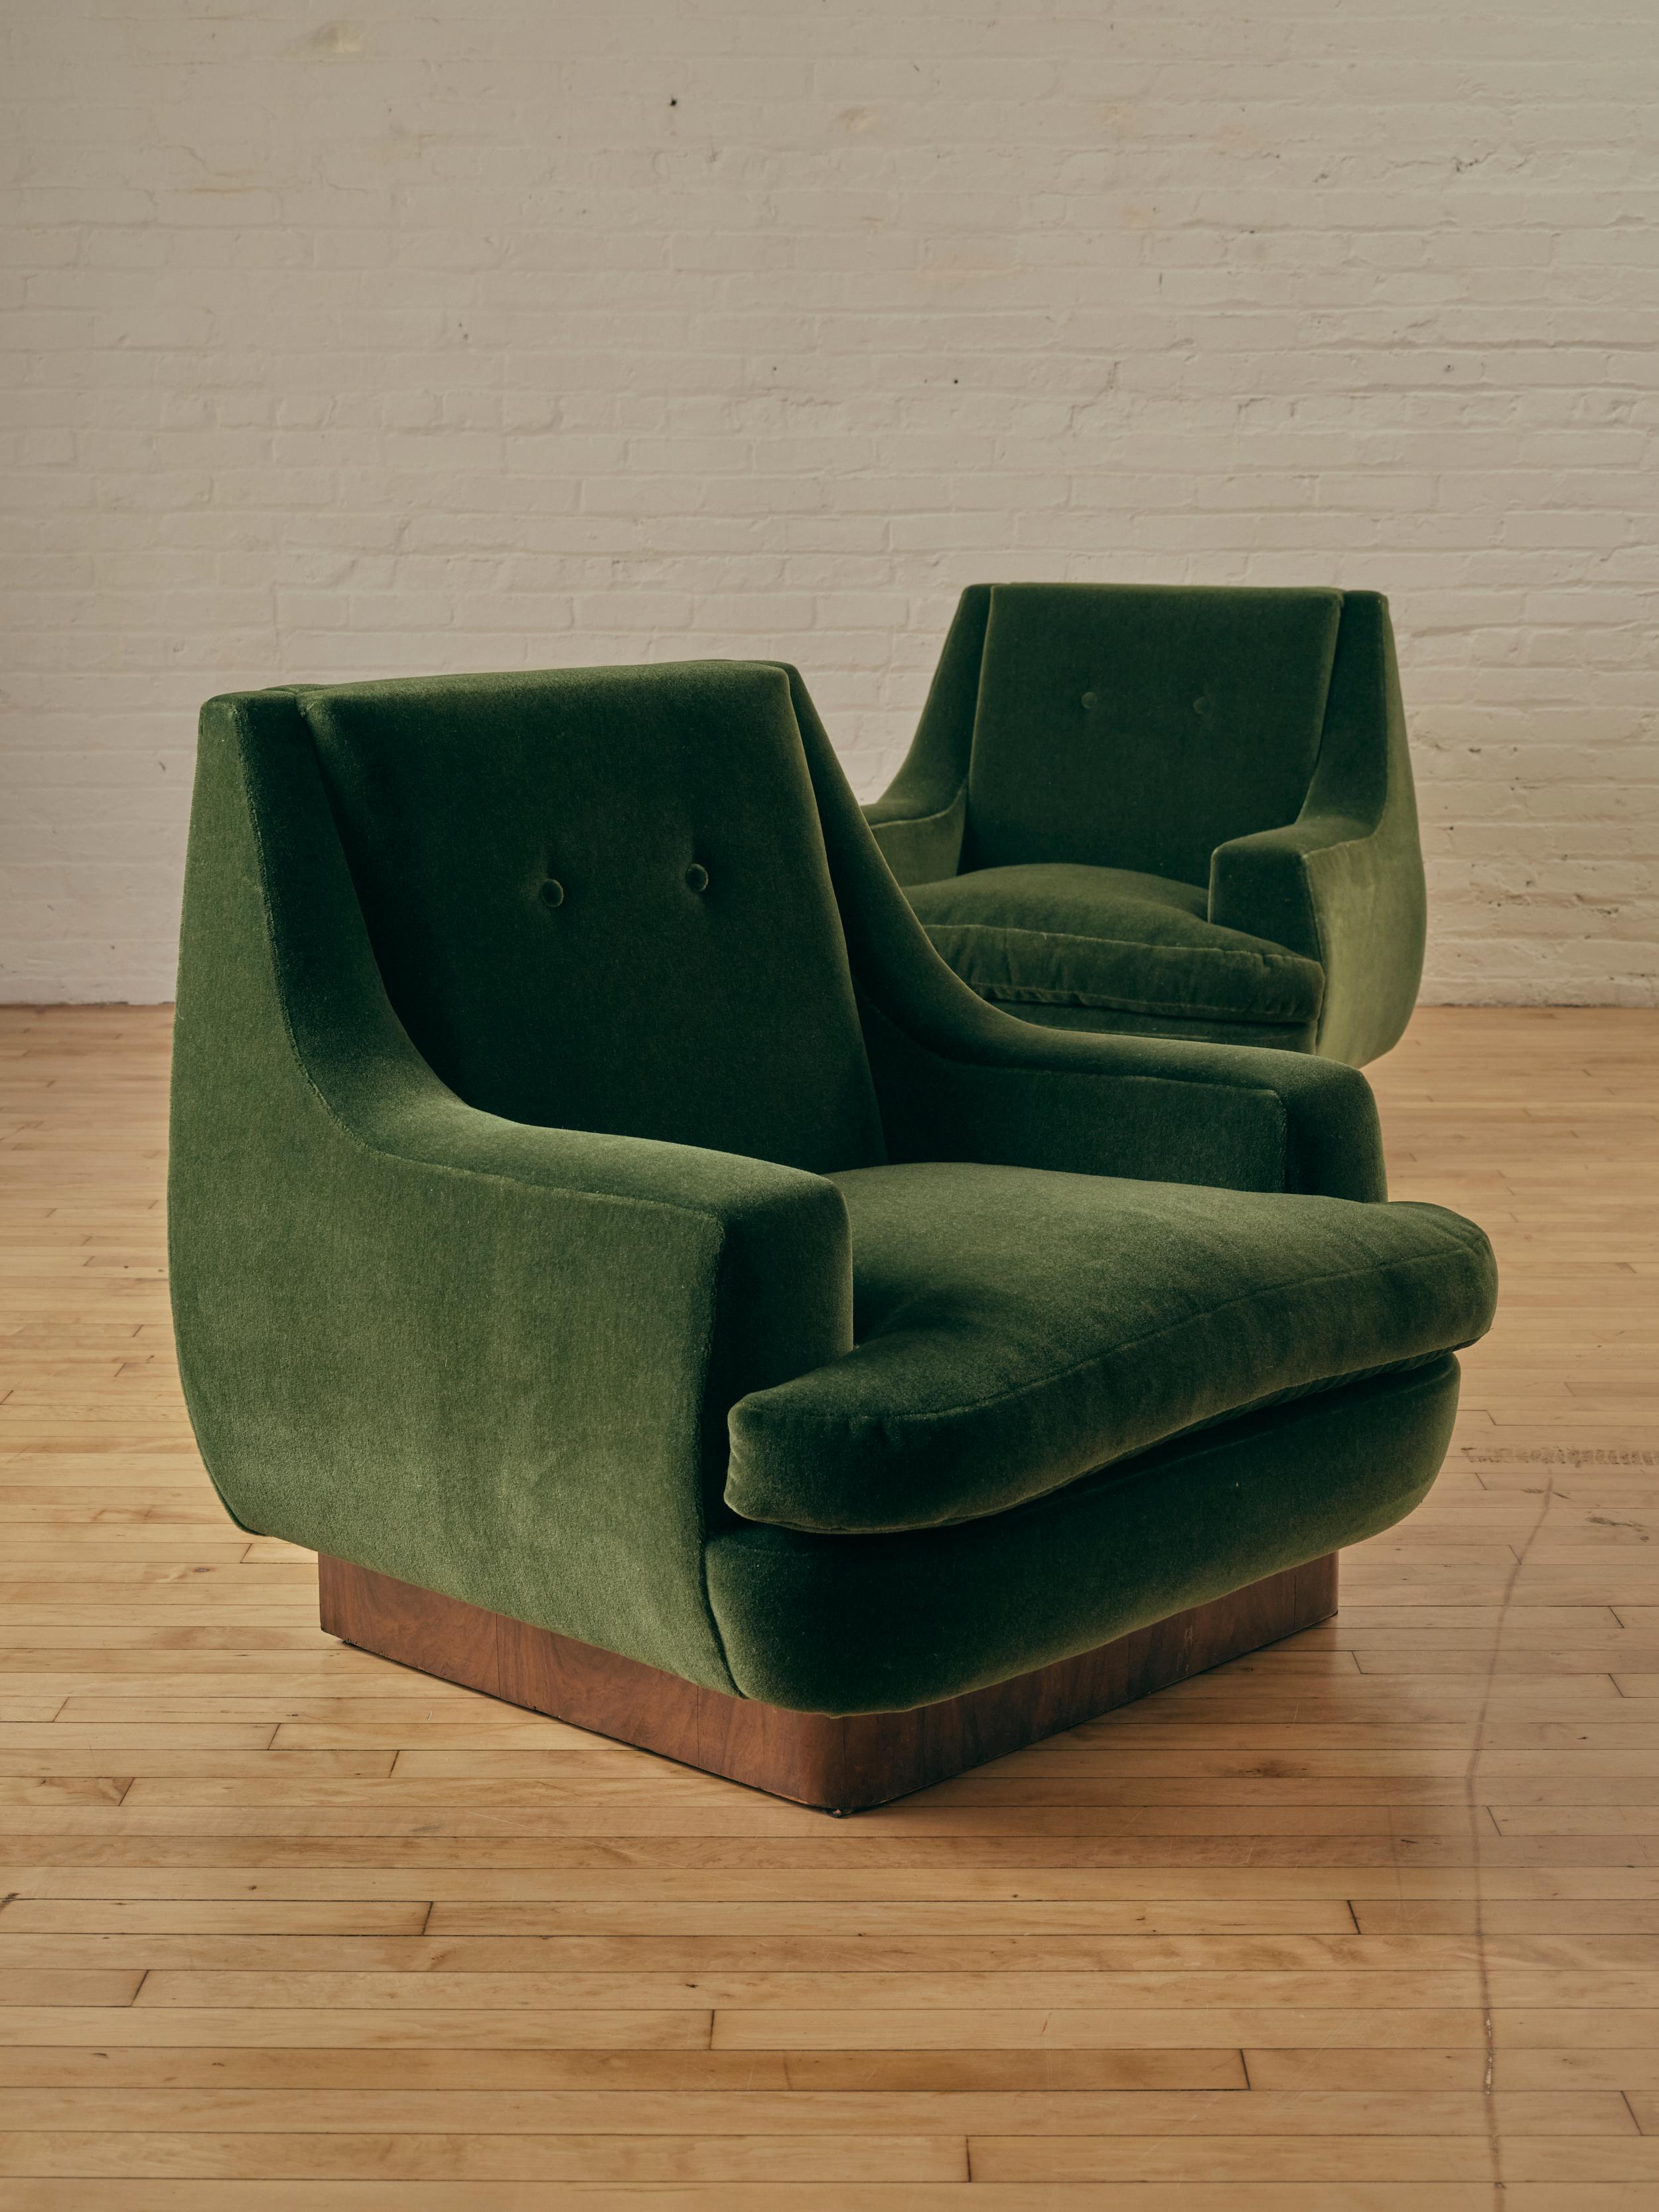 Paire de chaises longues cubiques modernistes, retapissées en mohair Vladimiro de Dedar Milano dans la couleur 25, Verde Bottiglia, reposant sur une riche base en bois. 

